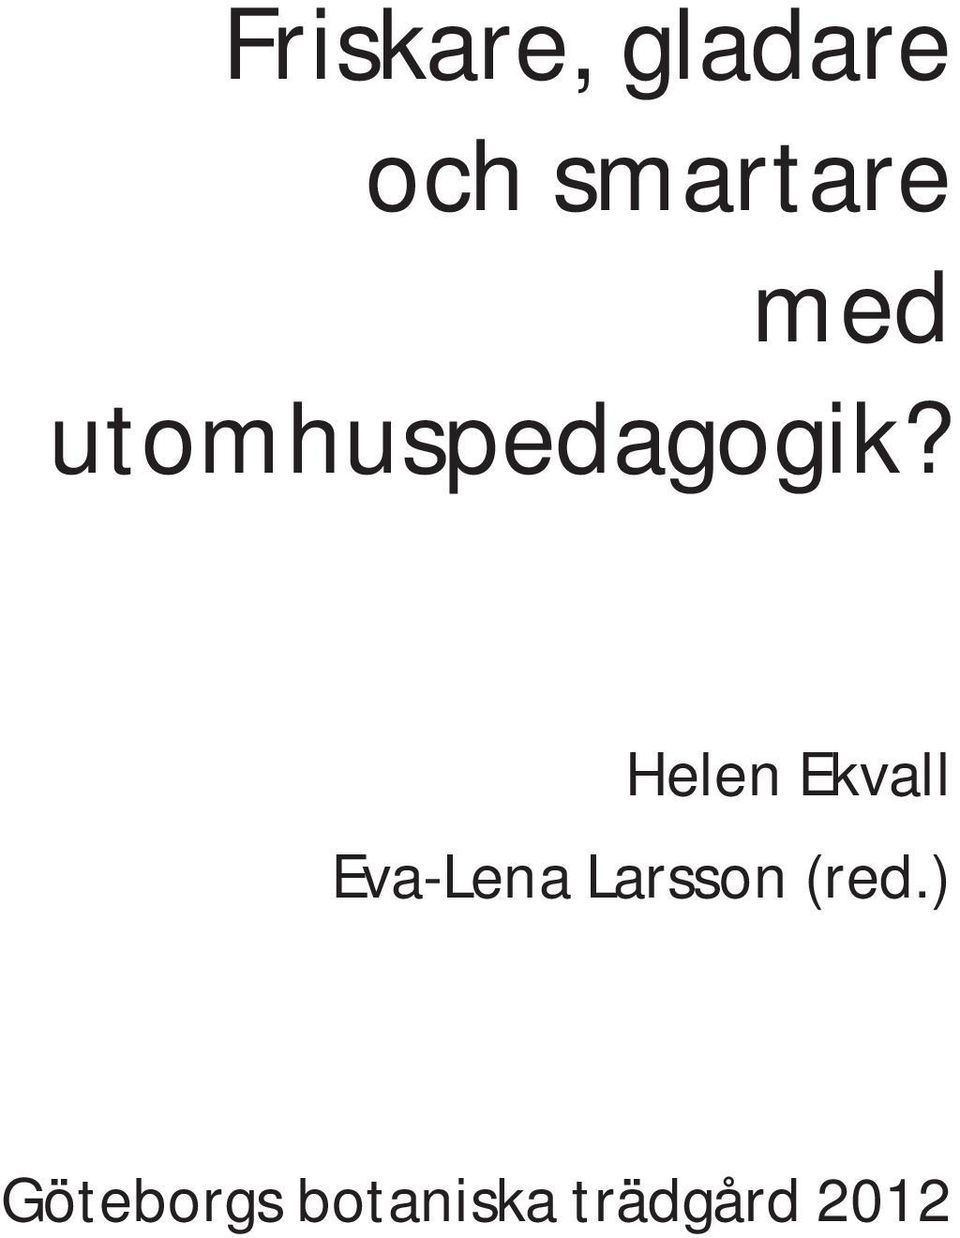 Helen Ekvall Eva-Lena Larsson